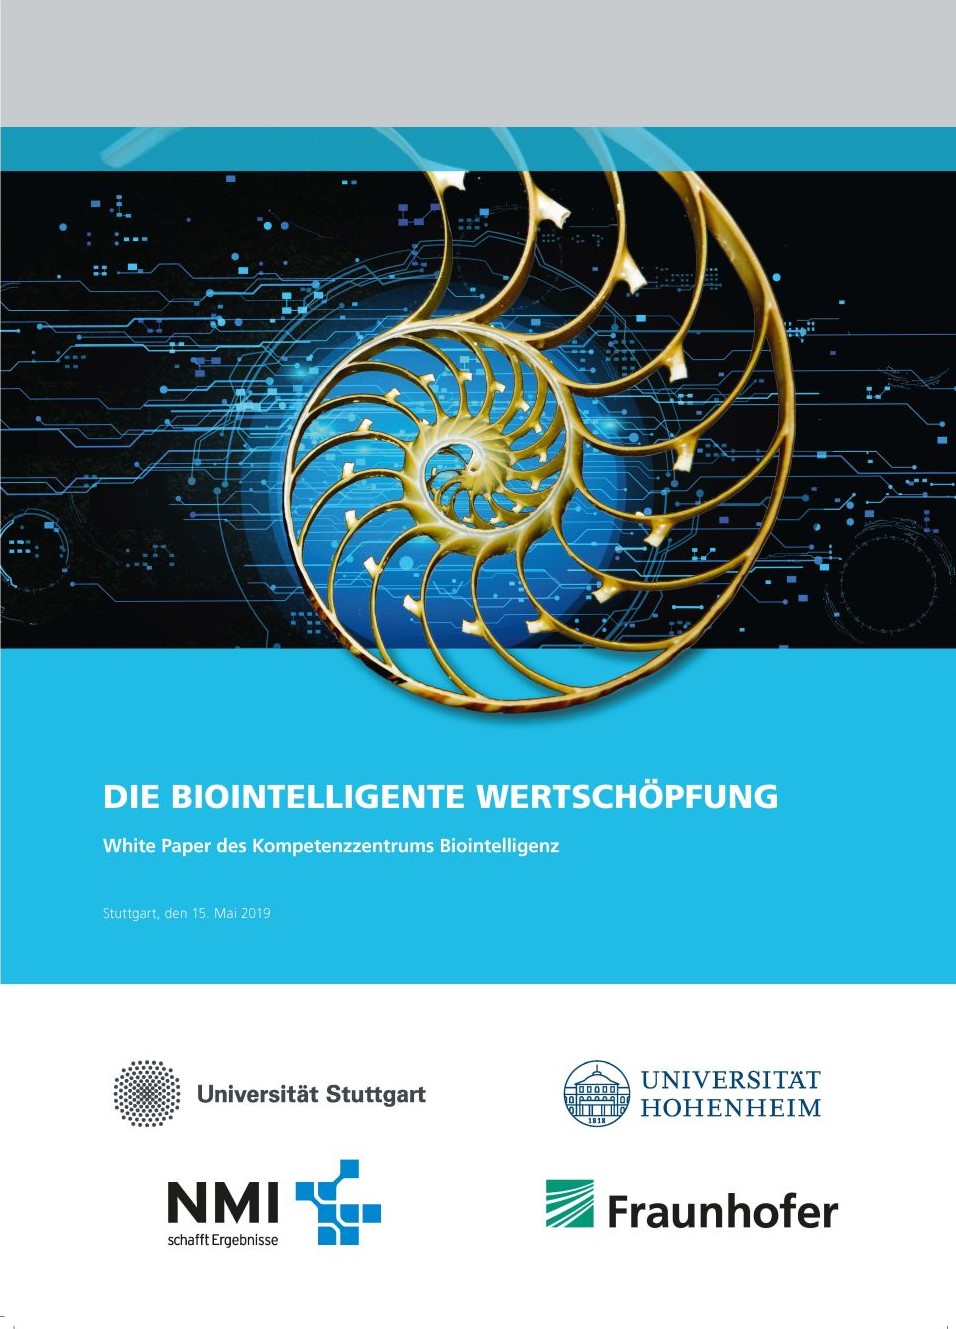 White Paper zur Biointelligenten Wertschöpfung